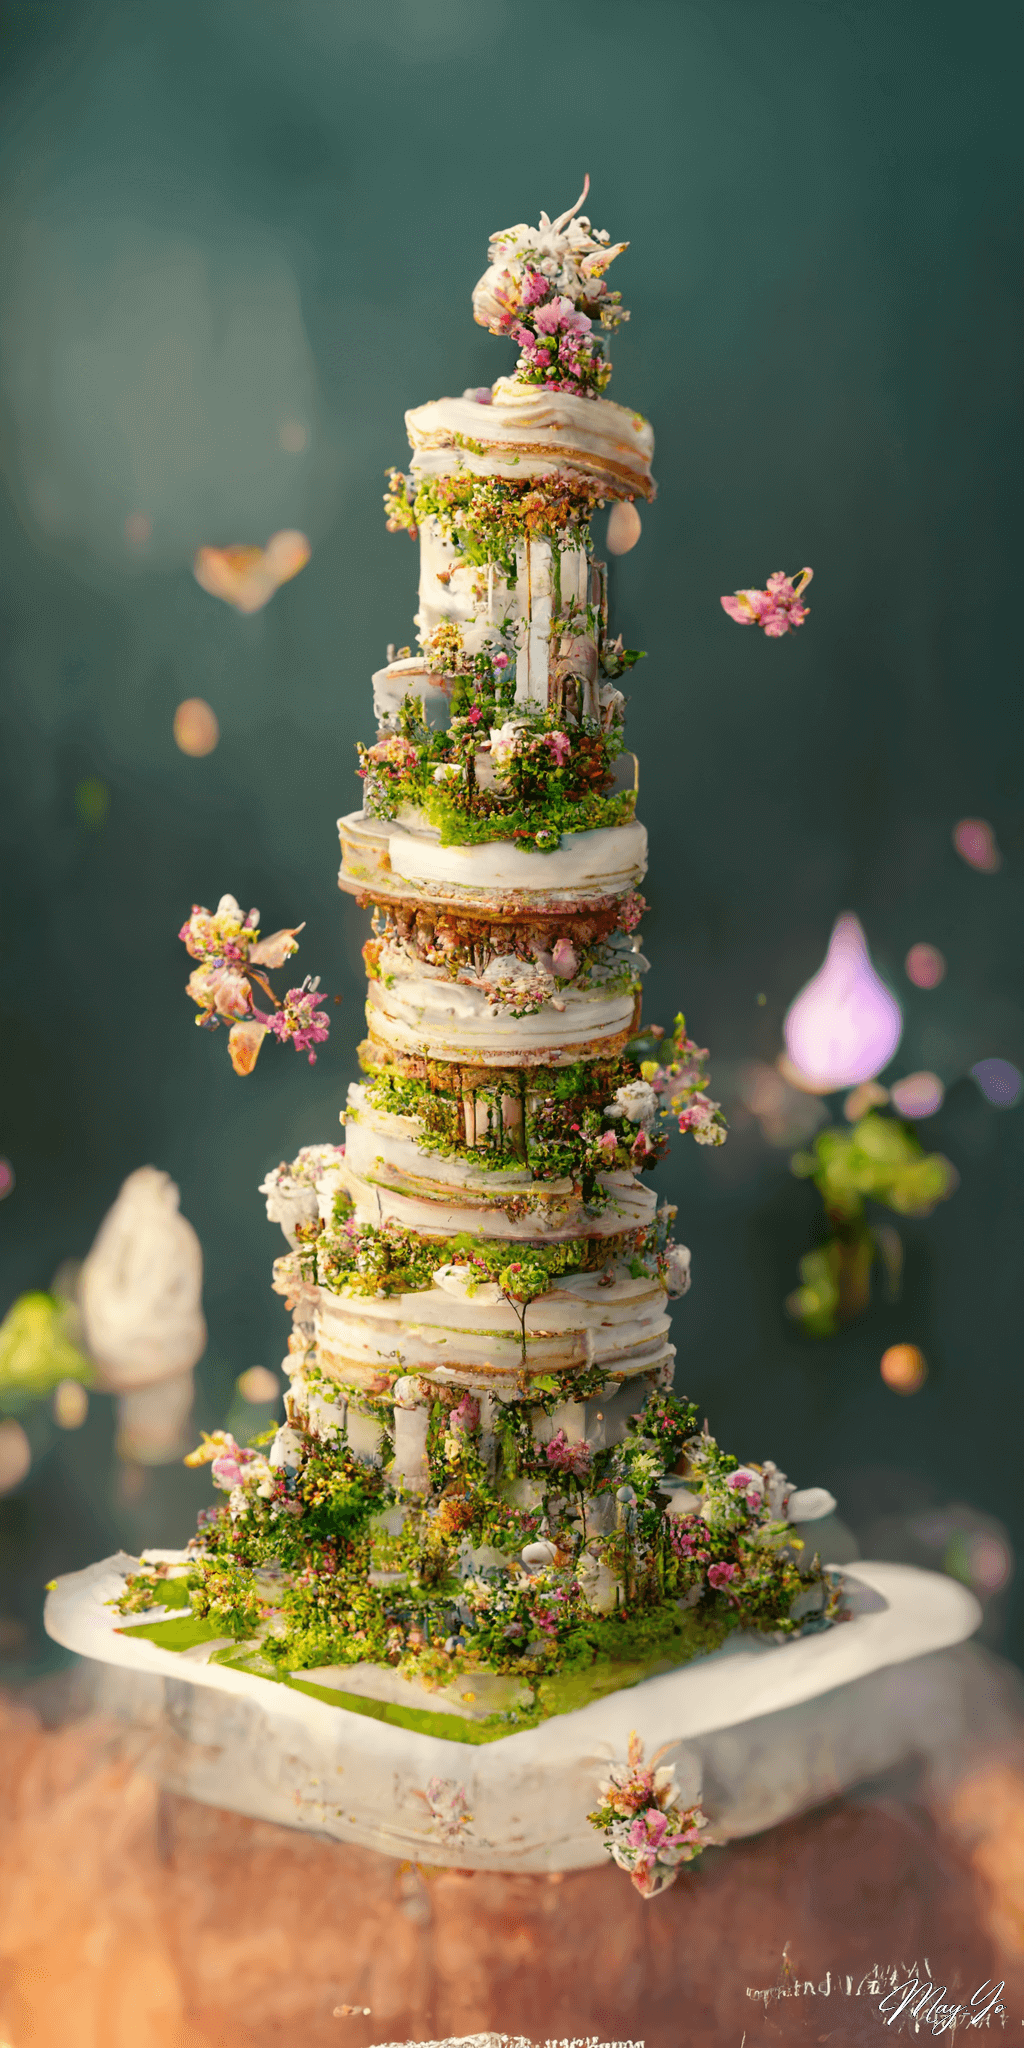 ウェディングケーキでできた不思議なタワーの壁紙イラスト ガーデンウェディングパーティーの塔のイメージの待受 AIイラスト待受 縦長画像 garden wedding party tower illustration wedding cake tower fiction art